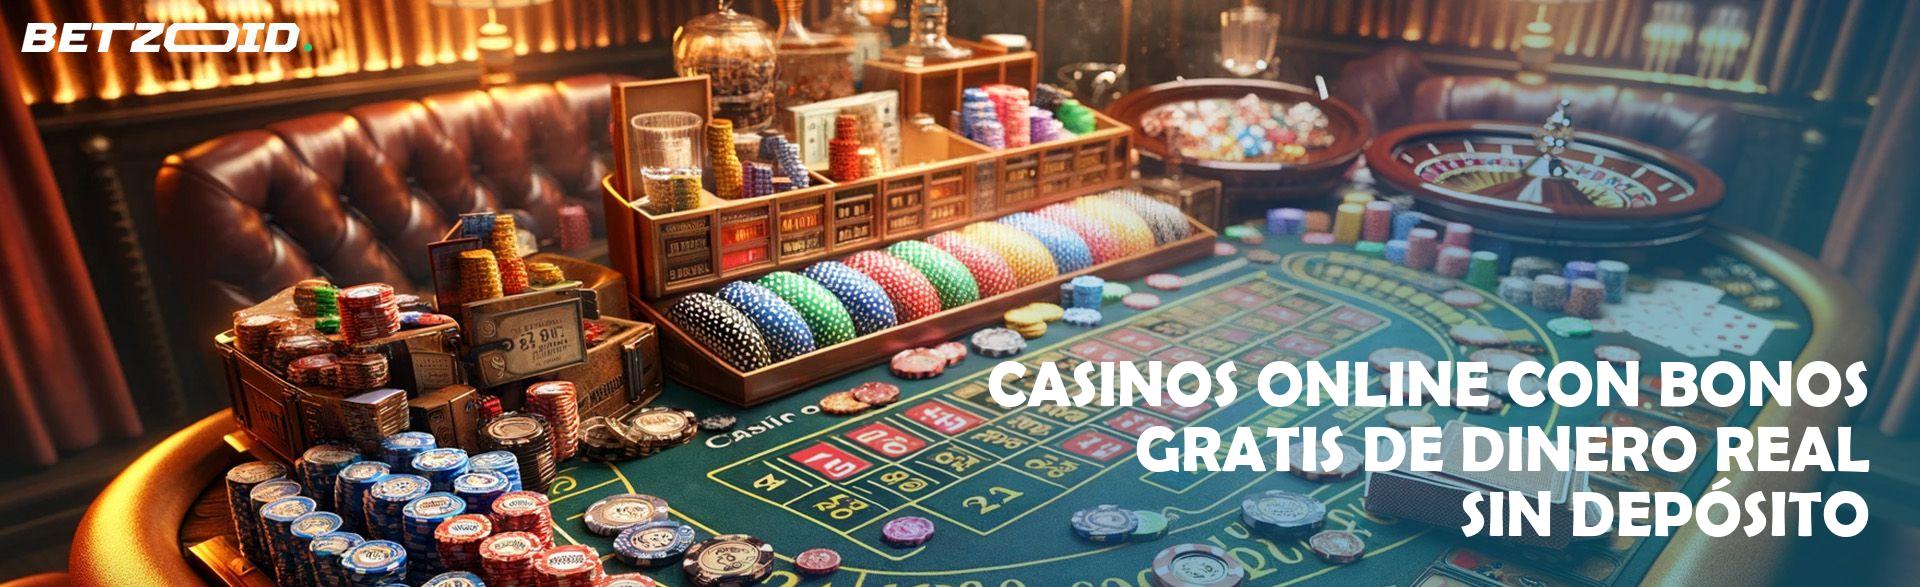 Casinos Online con Bonos Gratis de Dinero Real sin Depósito.